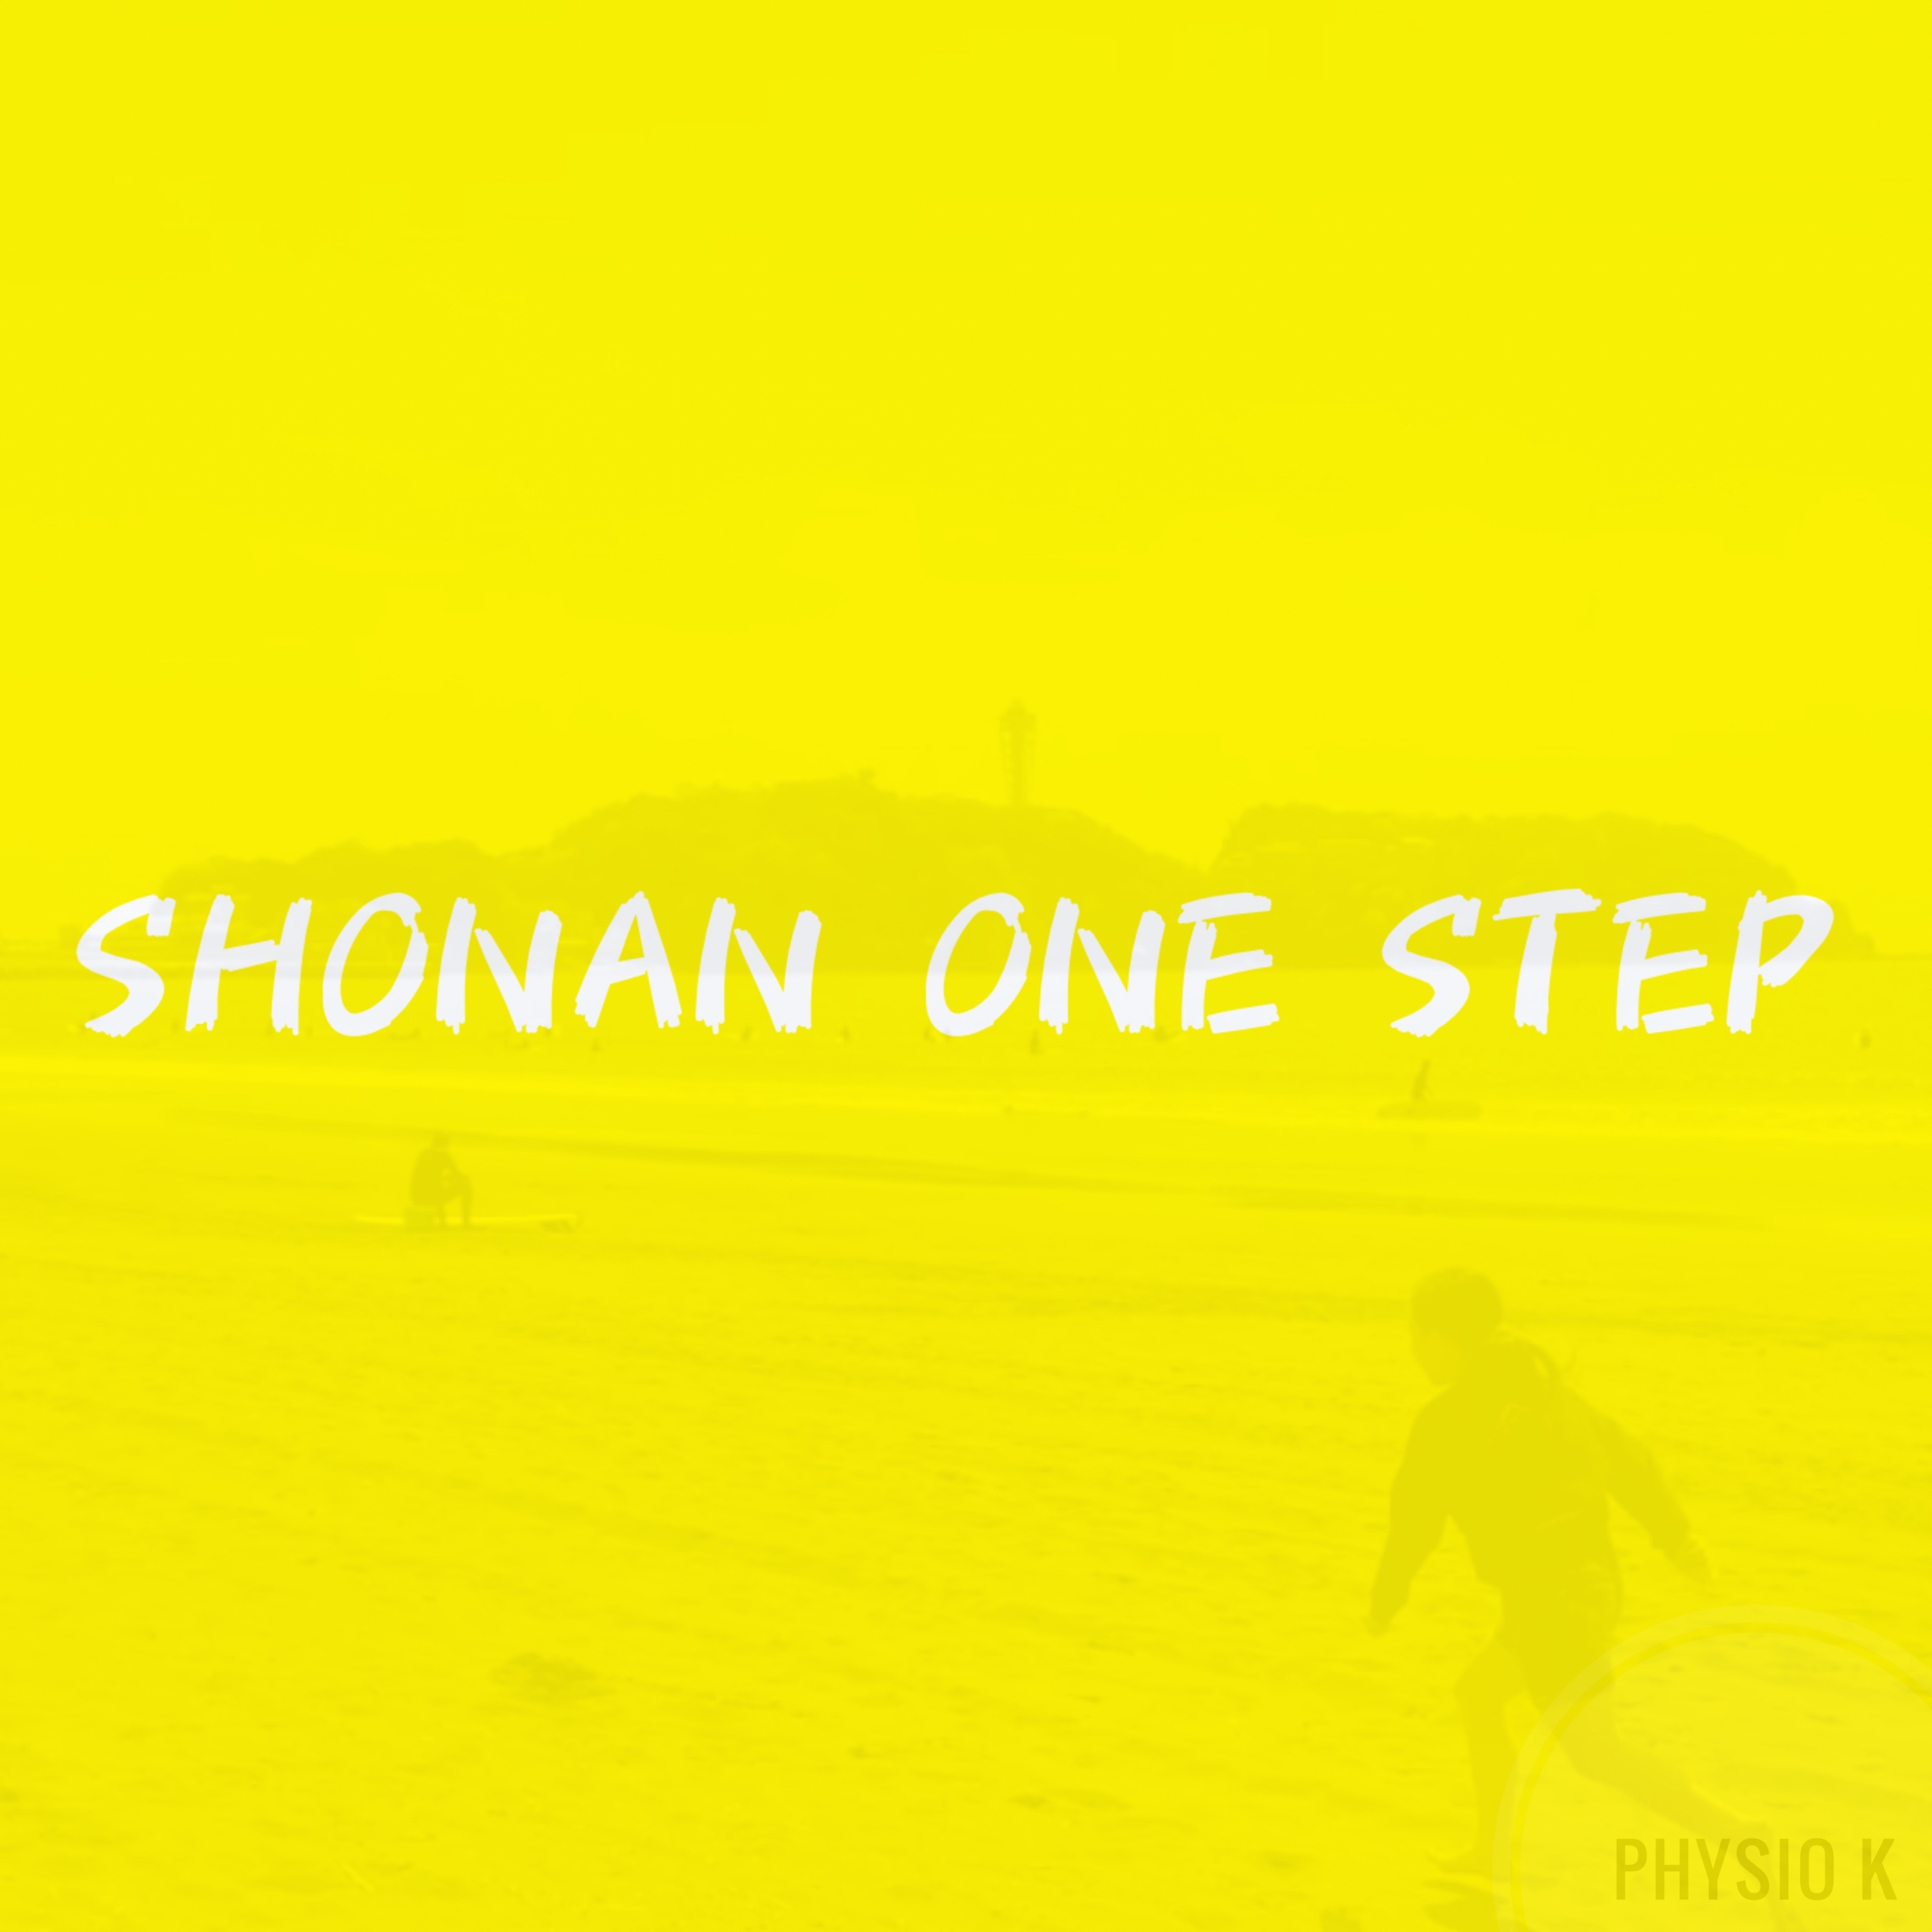 SHONAN ONE STEP